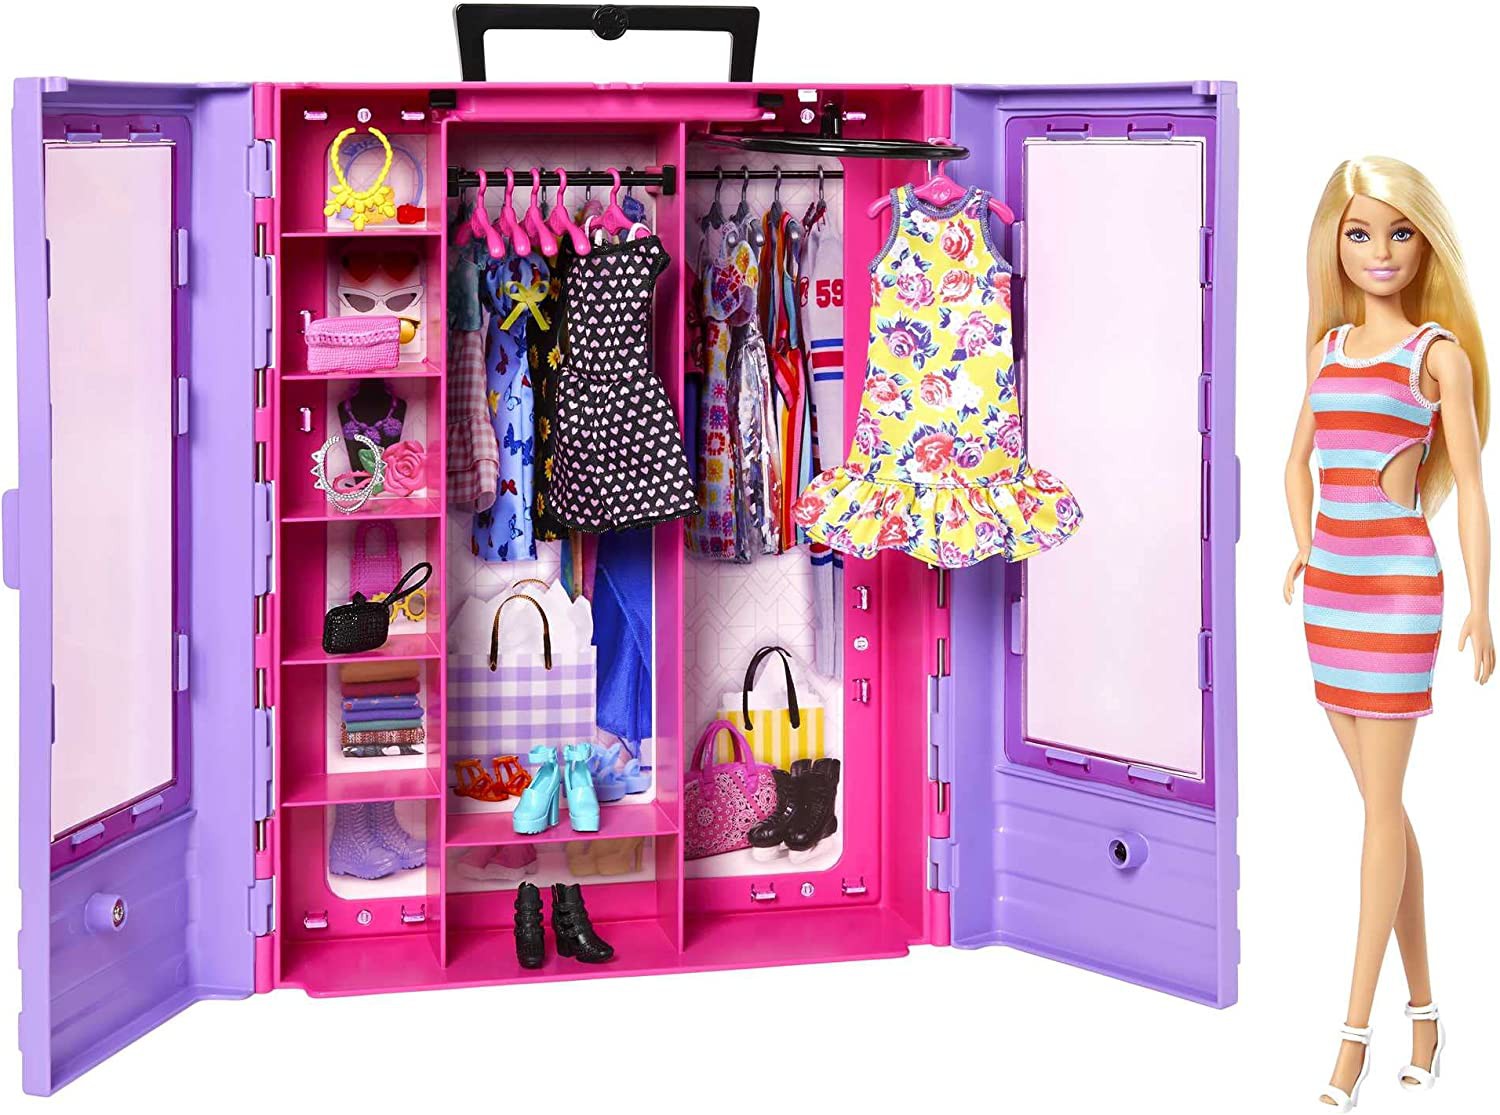 Boneca Barbie Supermercado De Luxo Com Acessórios FRP01 - Mattel